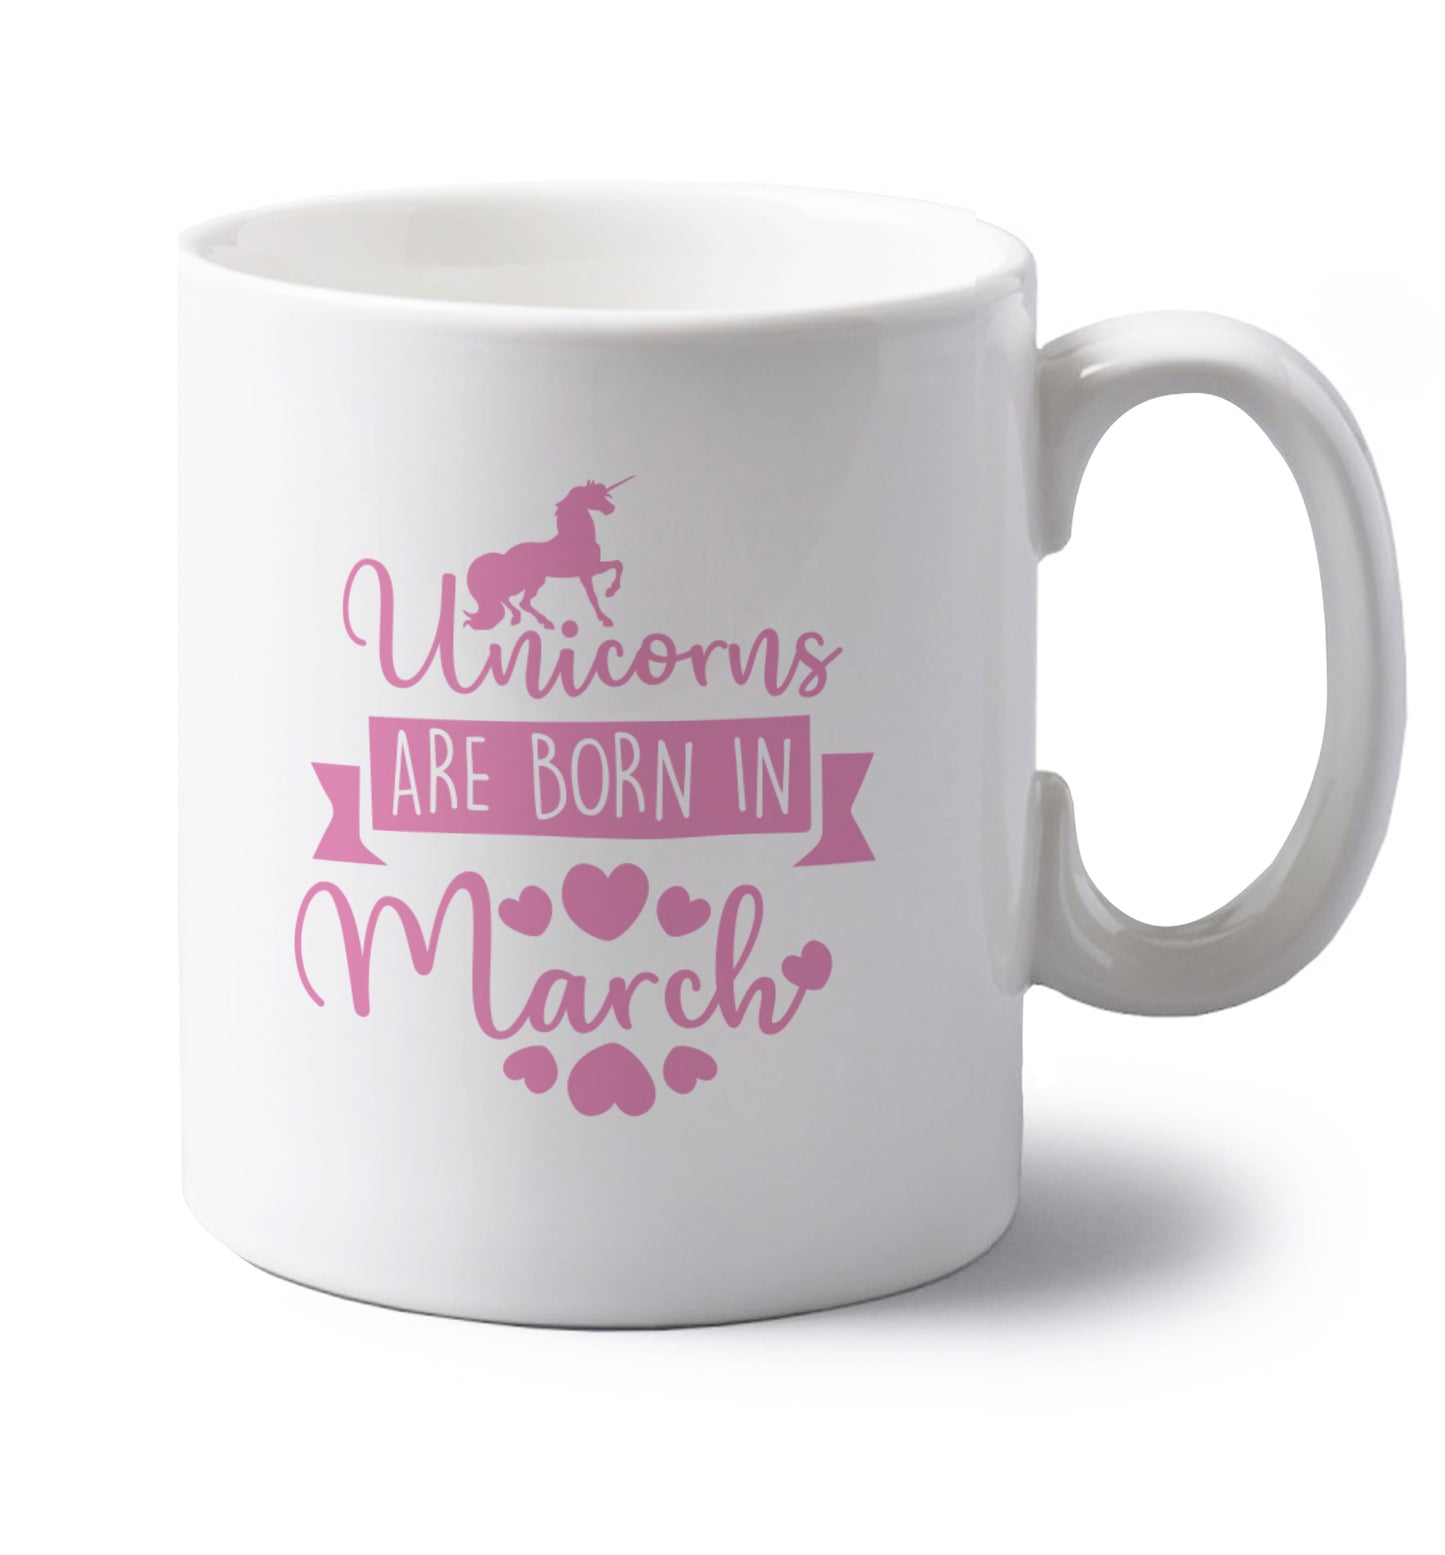 Unicorns are born in March left handed white ceramic mug 